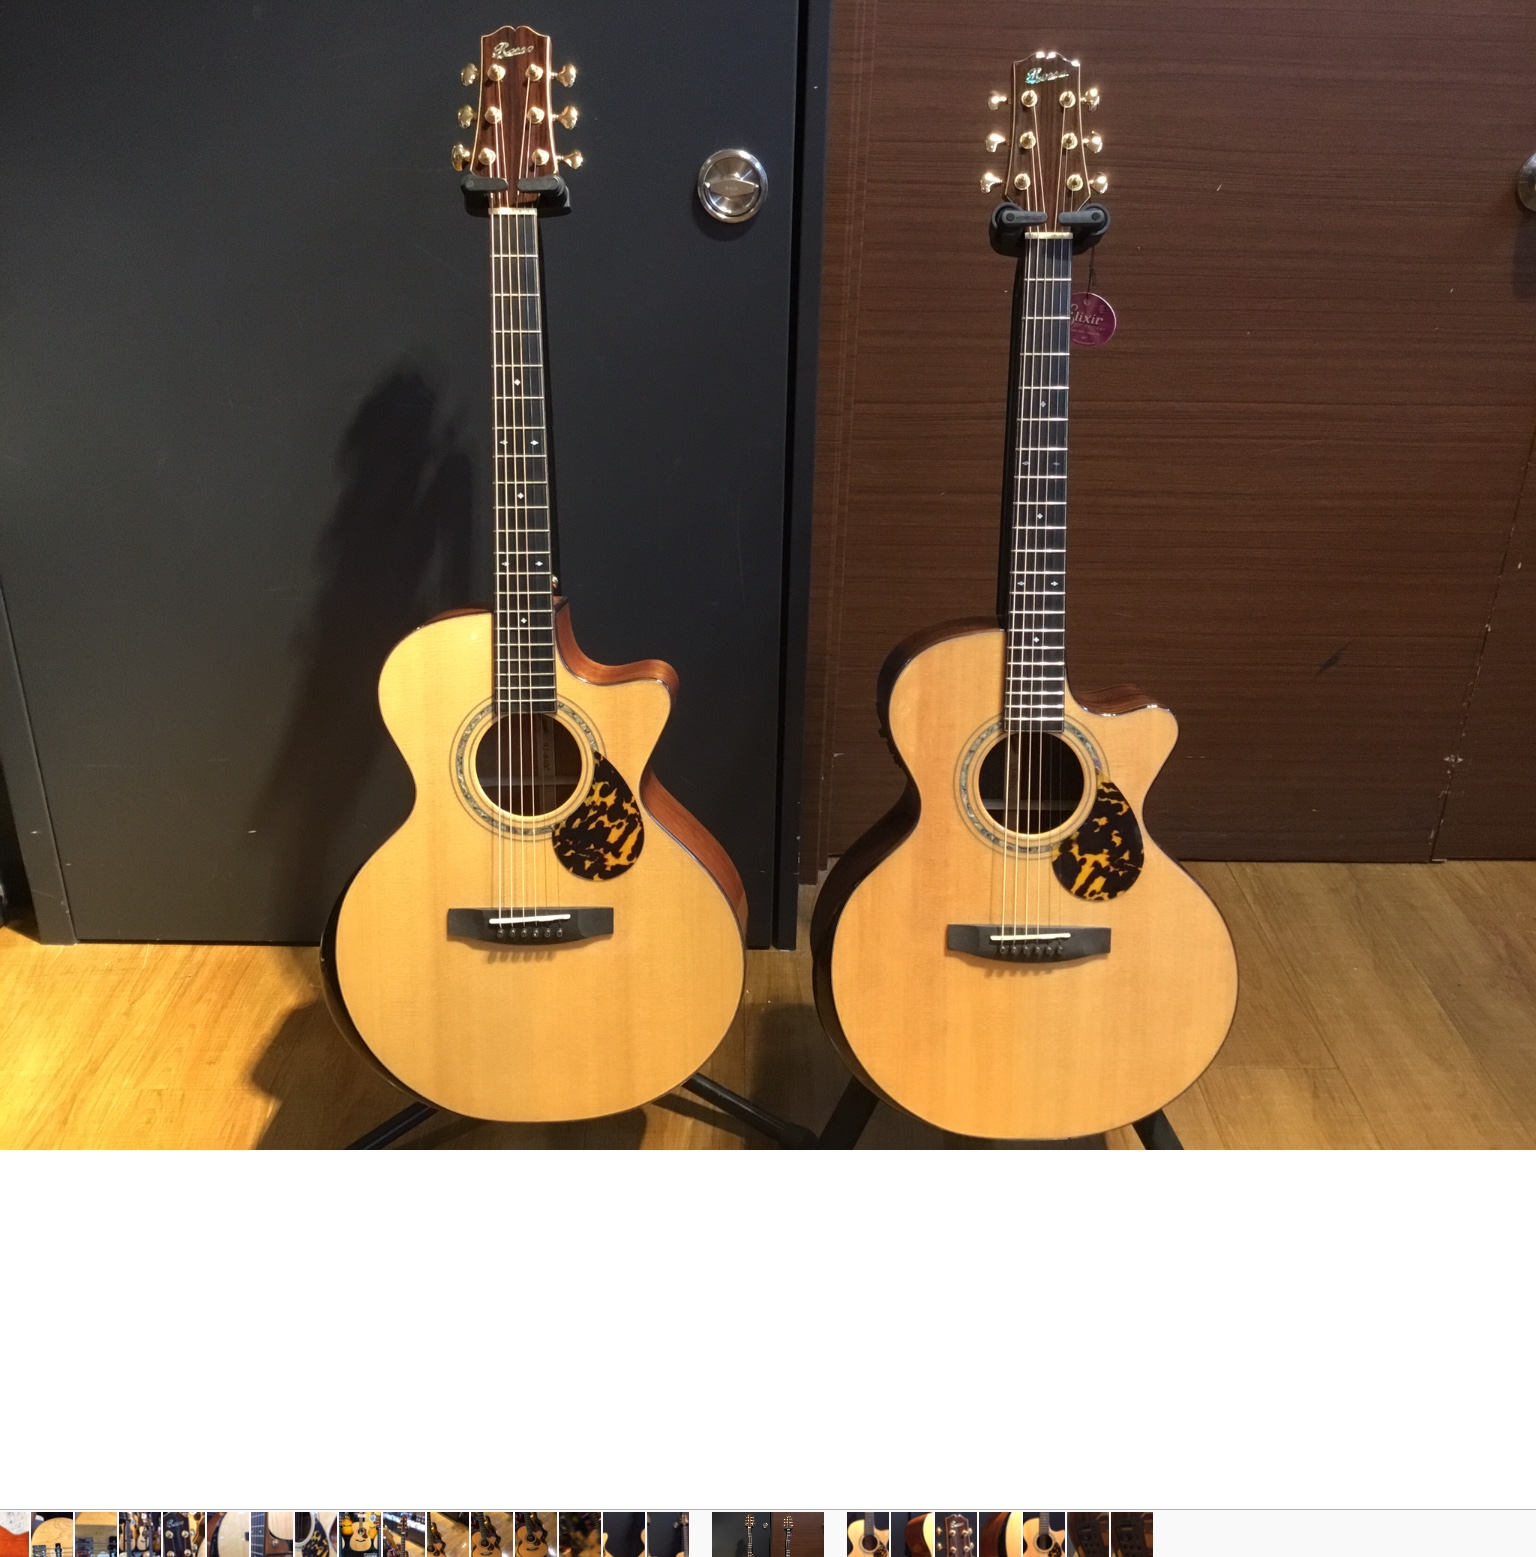 *Rossoから最高の見た目なギター2本が入荷しました！ ]]（左 SJ-840C：右 SJ-841C） 皆さんこんにちは！ 本日入荷しました、]]『Rosso』のギター2本を紹介させていただきます！ *Rossoとは？ "Rosso"ブランドは各部、シェイプのデザインから、パーツの選定、サウンドな […]